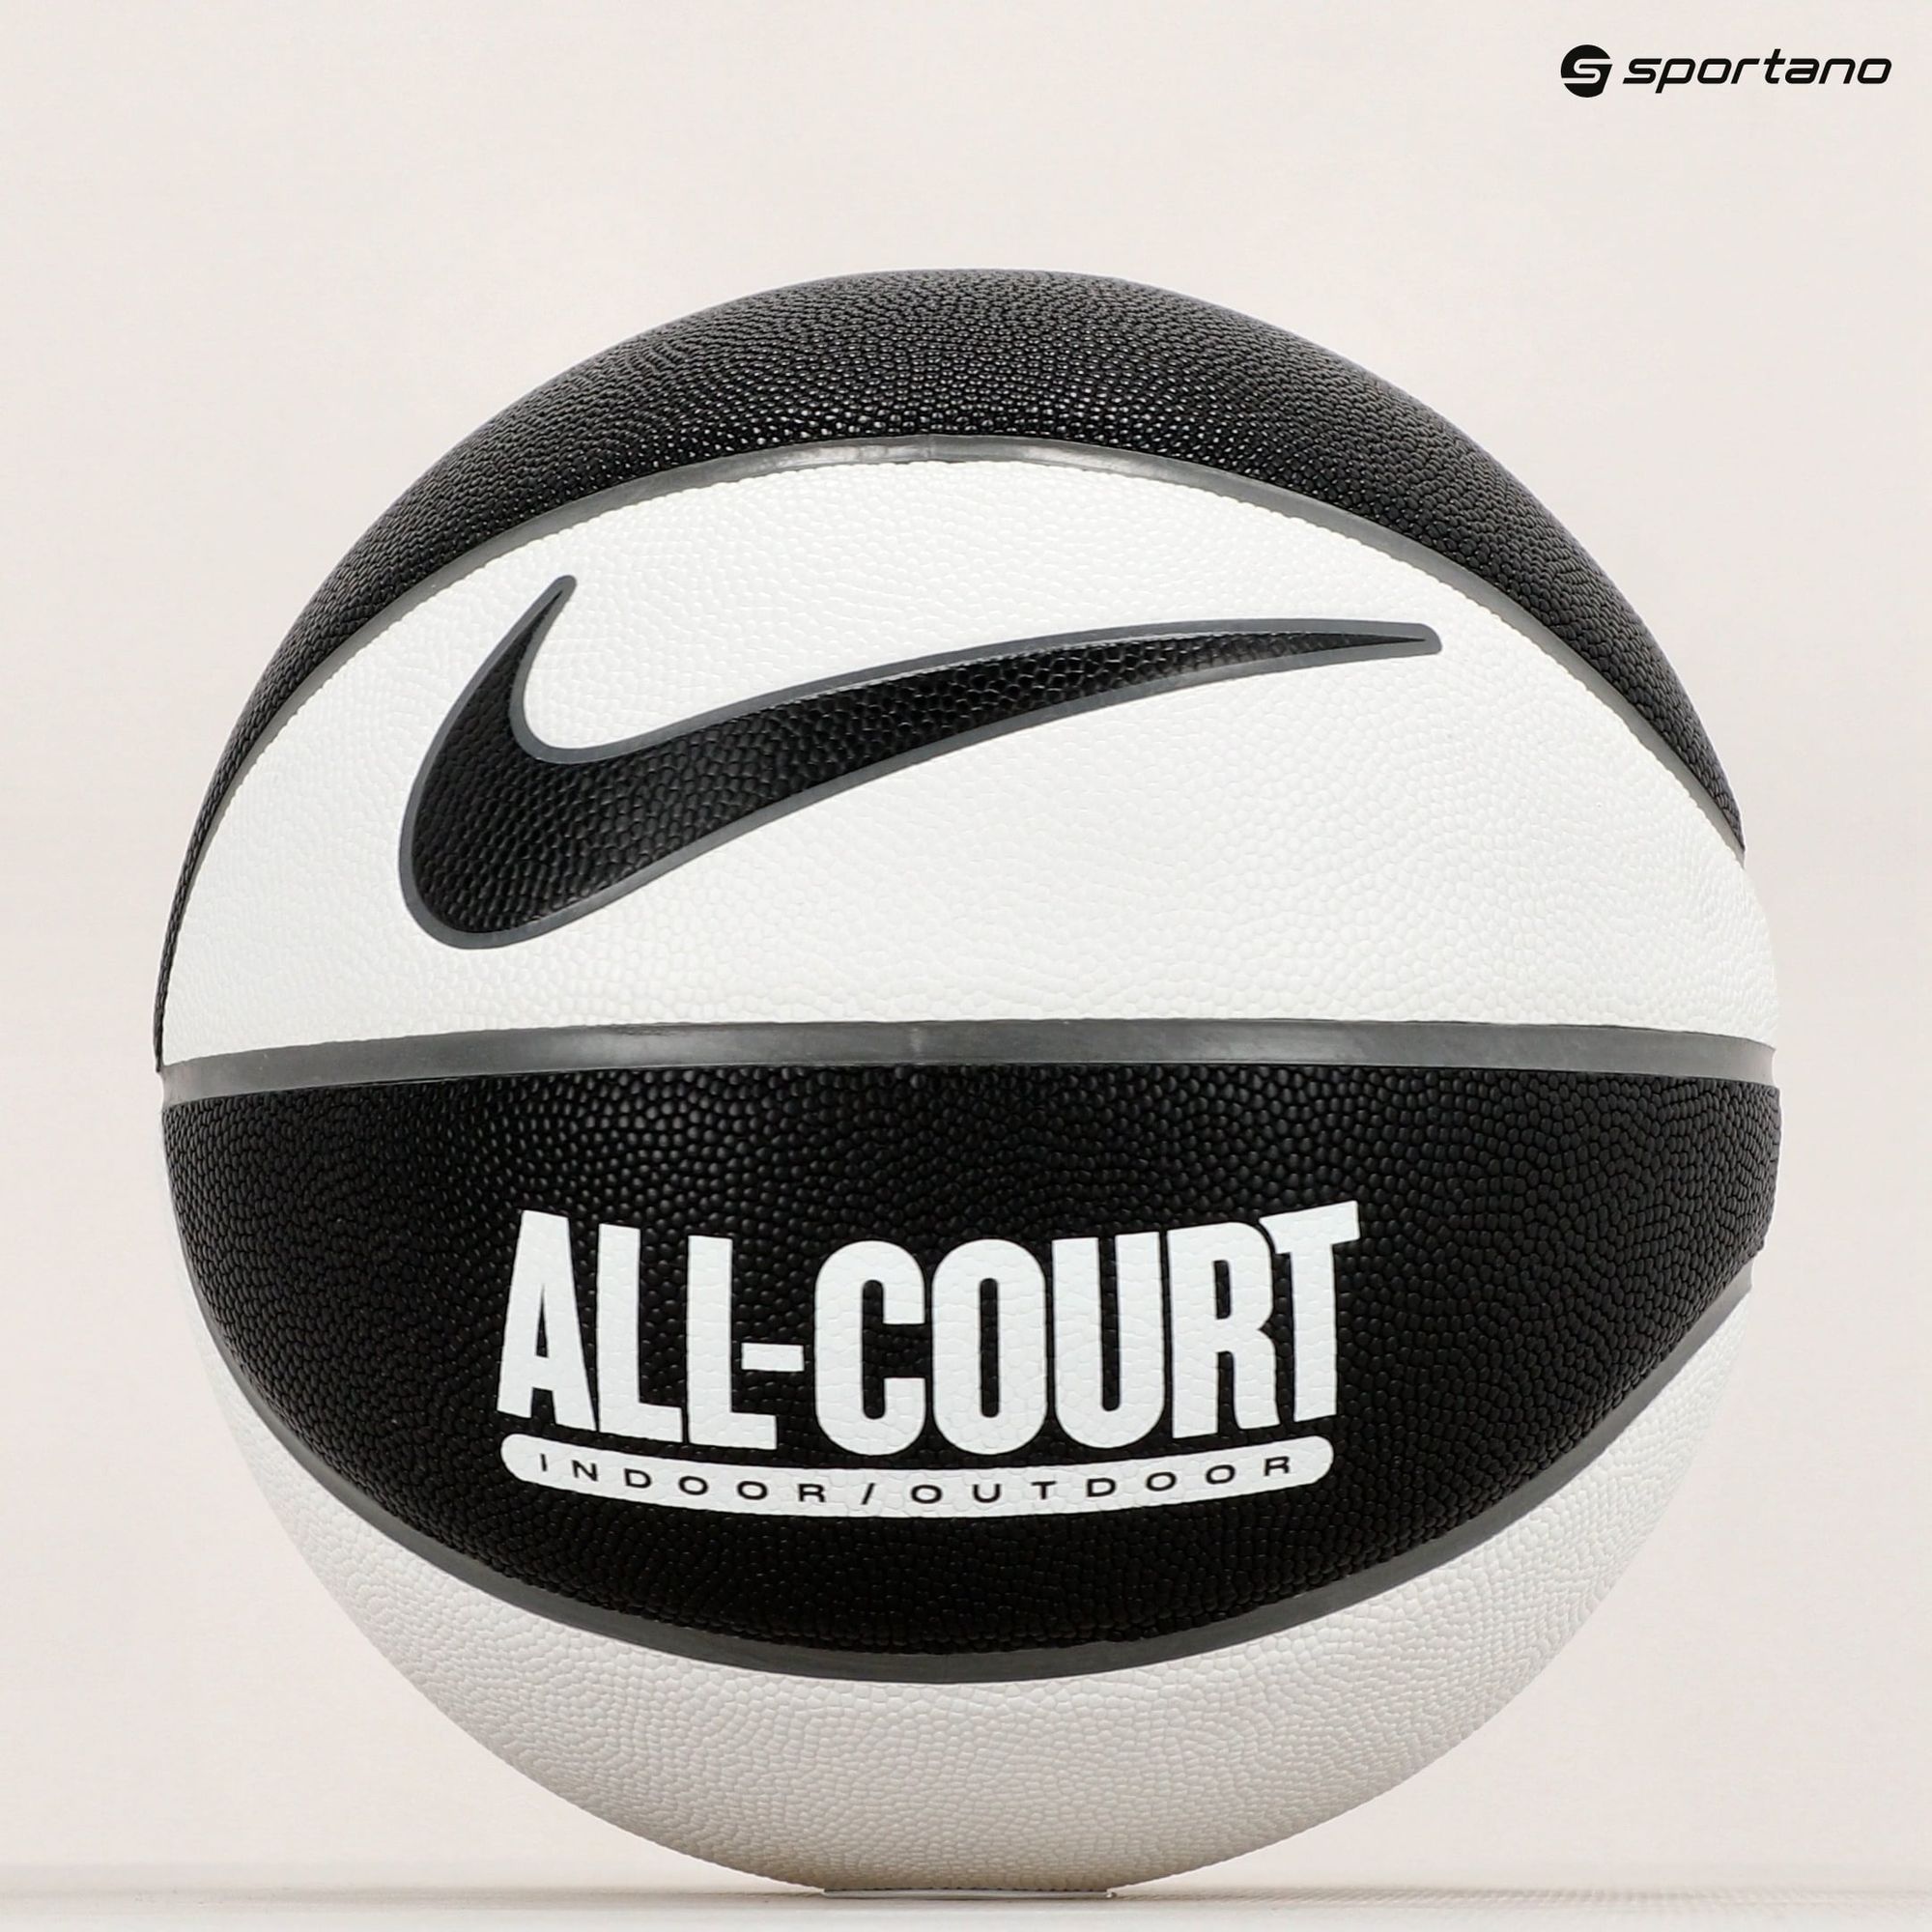 Piłka do koszykówki Nike Everyday All Court 8P Deflated black/white/cool grey/black rozmiar 7 zdjęcie nr 4